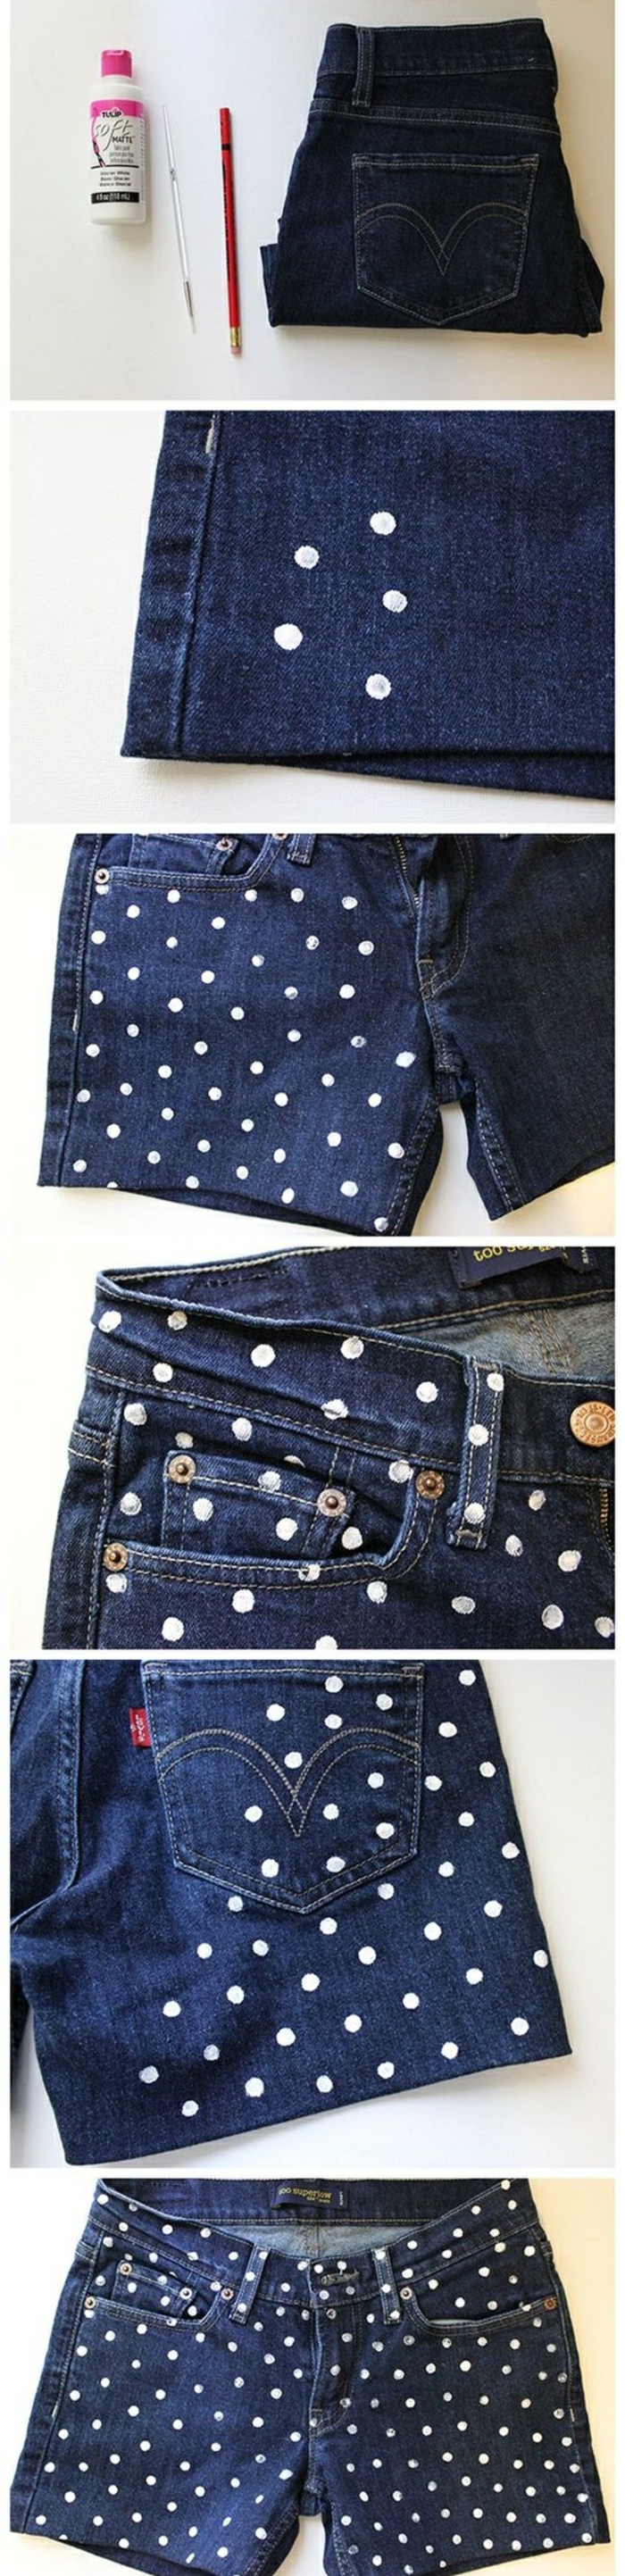 upcycling ideen - dunkelblaue jeans mit weißen punkten